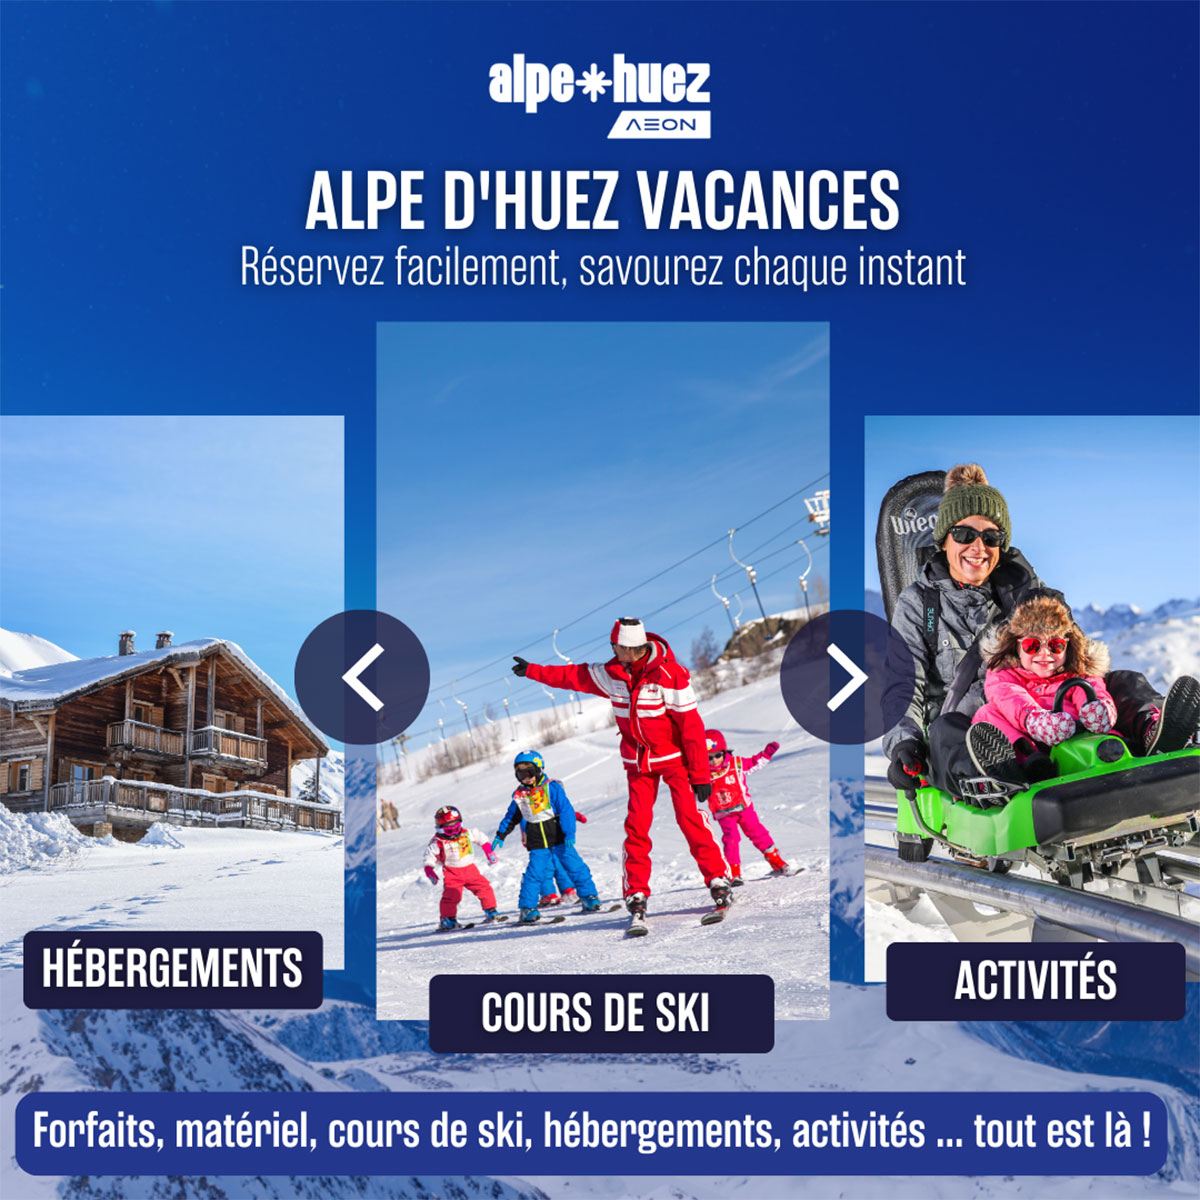 Alpe d'Huez Vacances